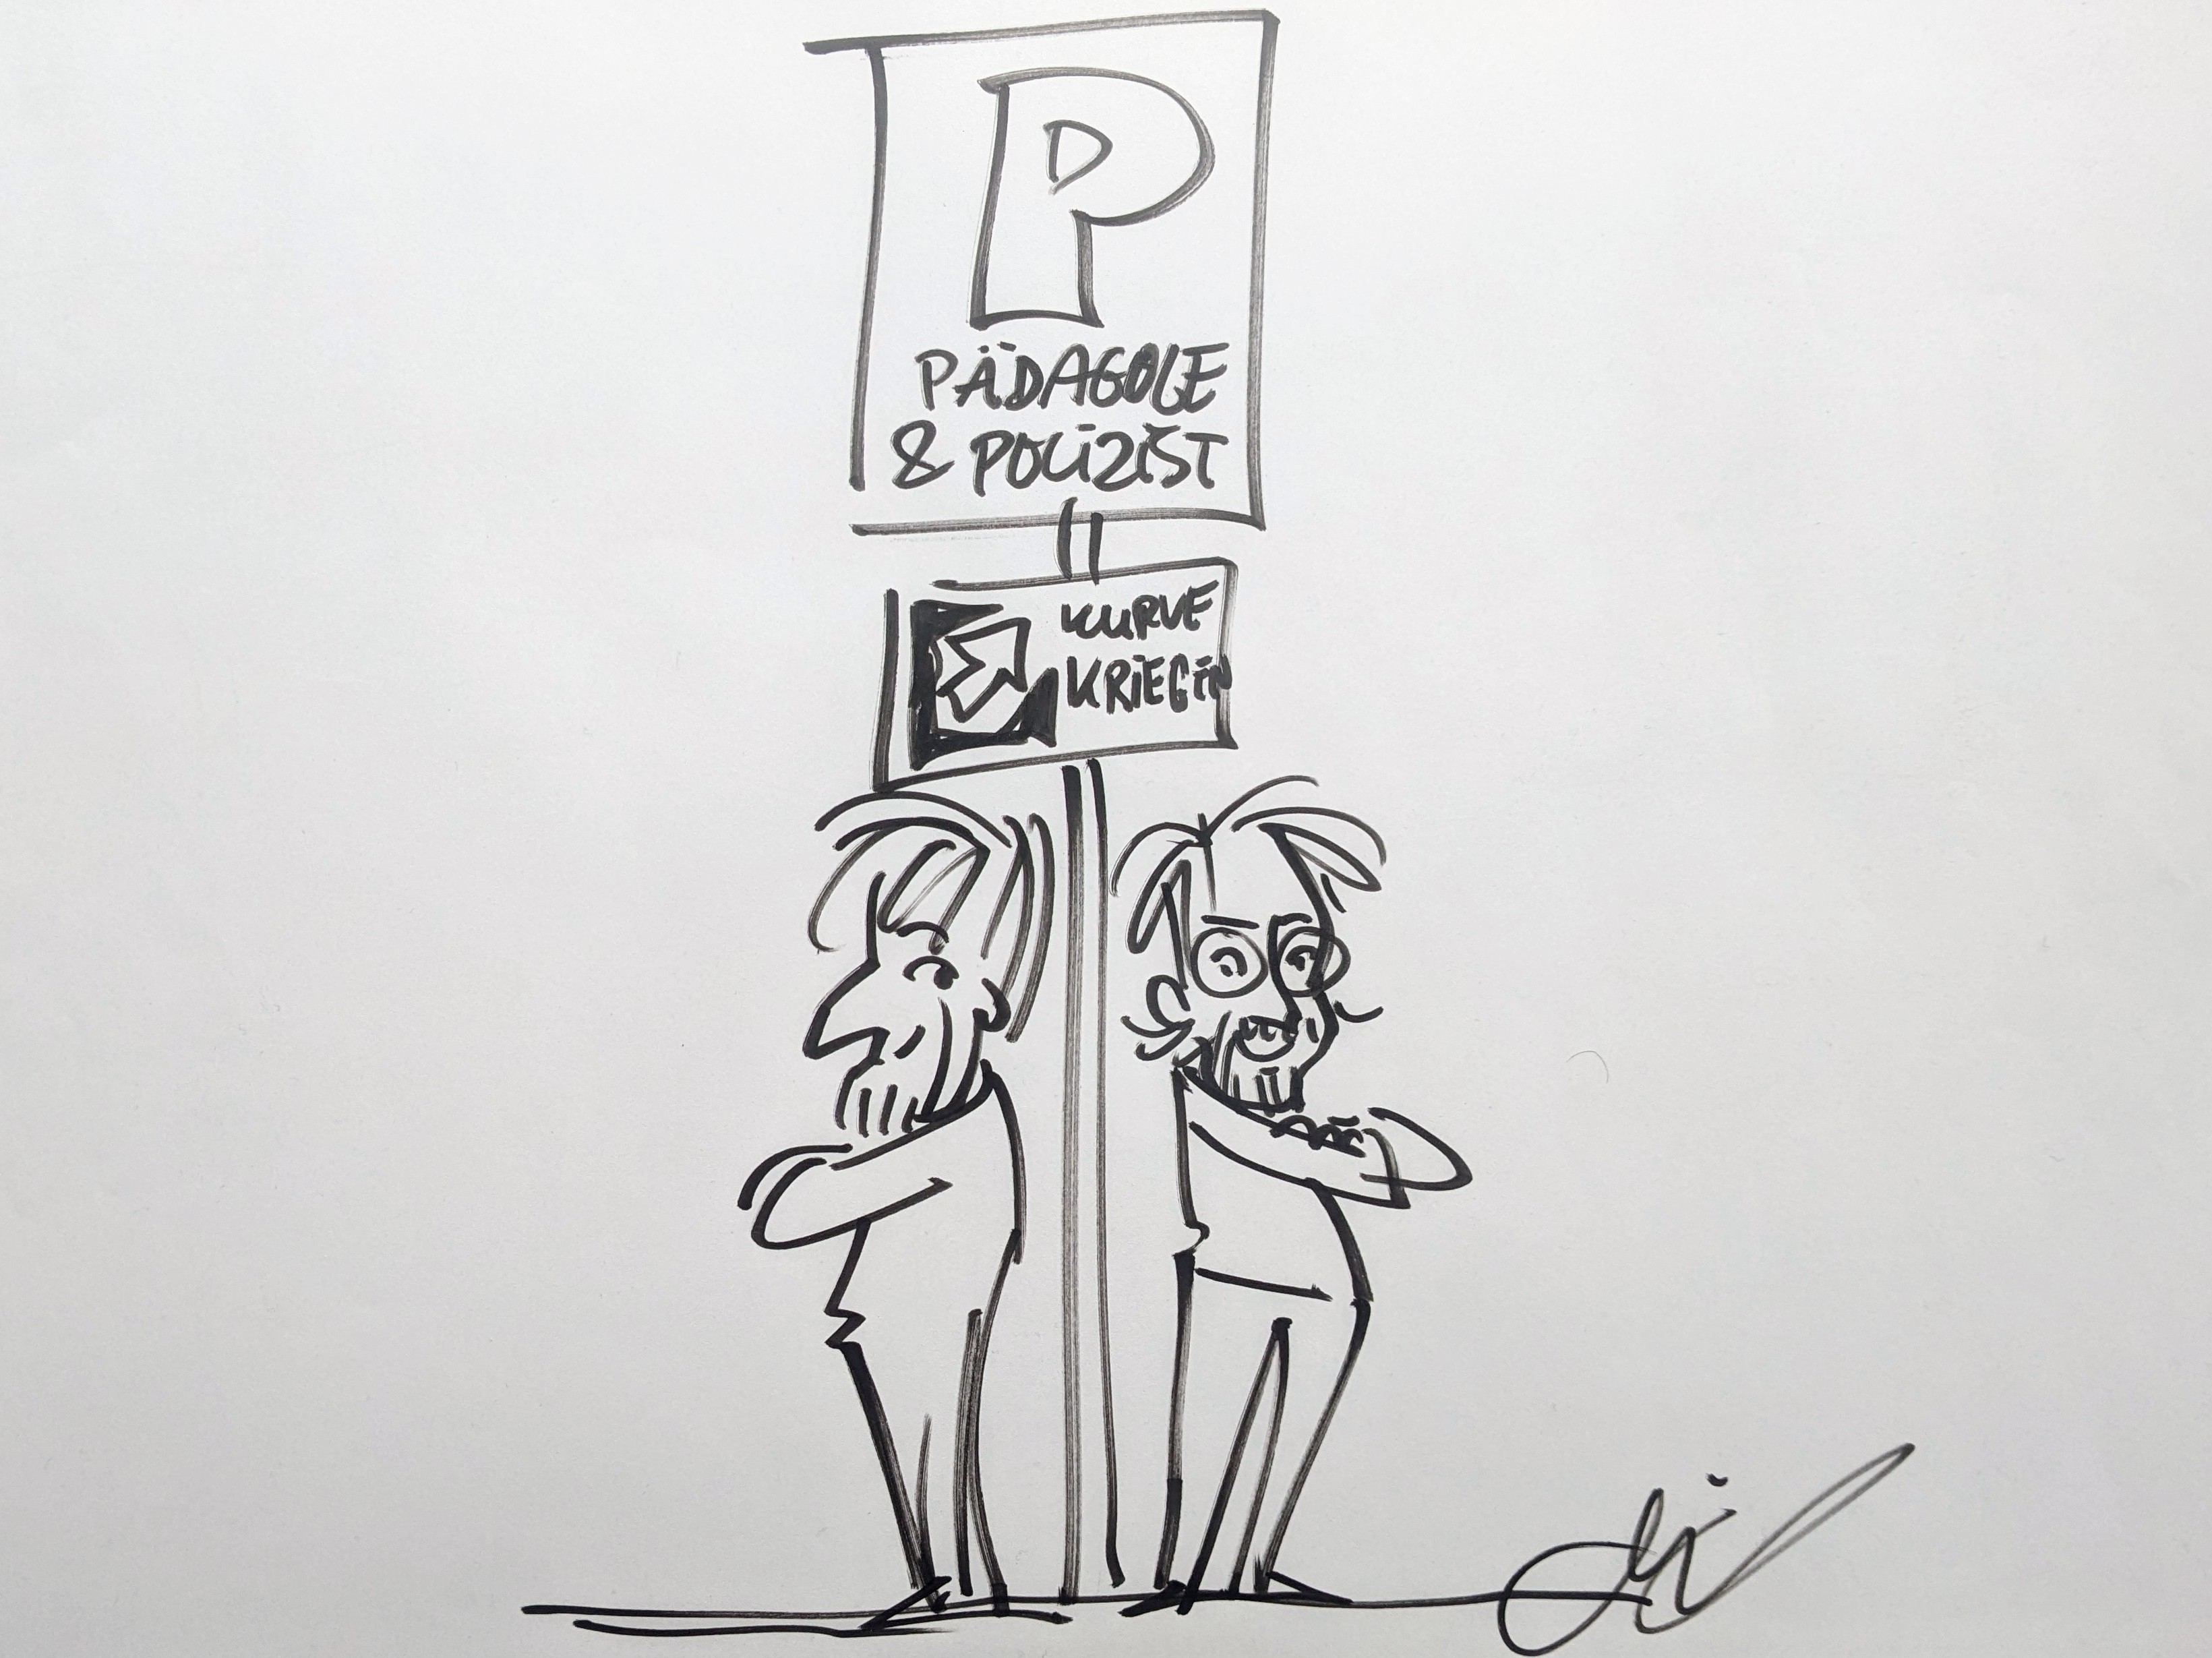 Karikatur von Michael Hüter die zwei Personen aus dem Team Kurve kriegen zeigt.